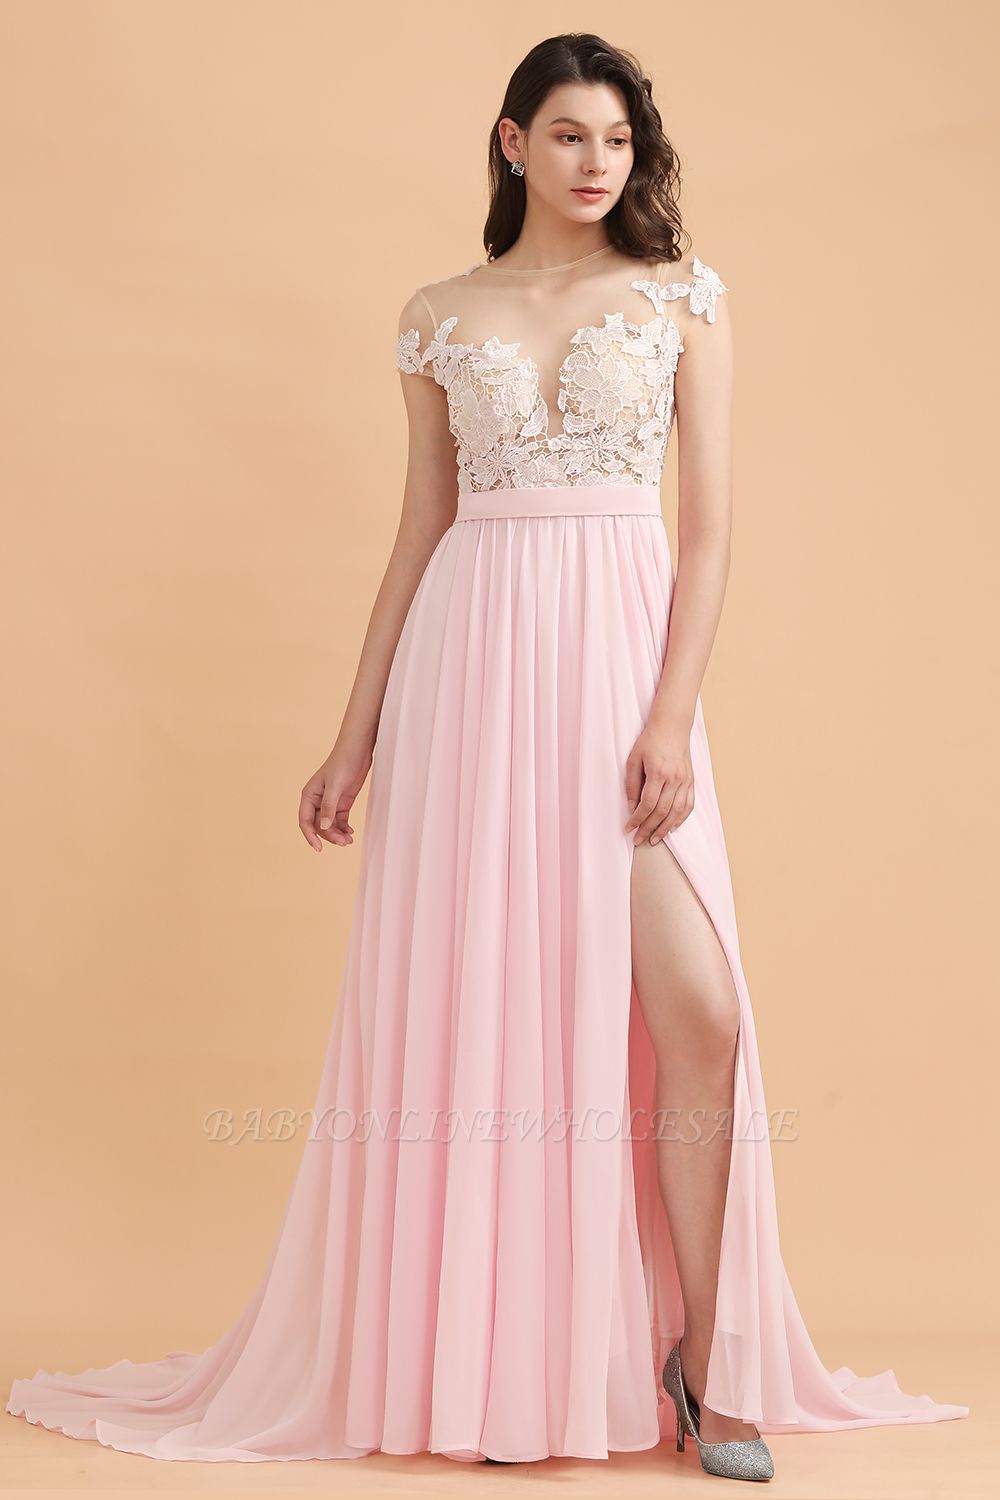 Кружевные аппликации с рукавами-крылышками Платье для подружки невесты Розовое шифоновое платье для свадебной вечеринки Aline с боковым разрезом